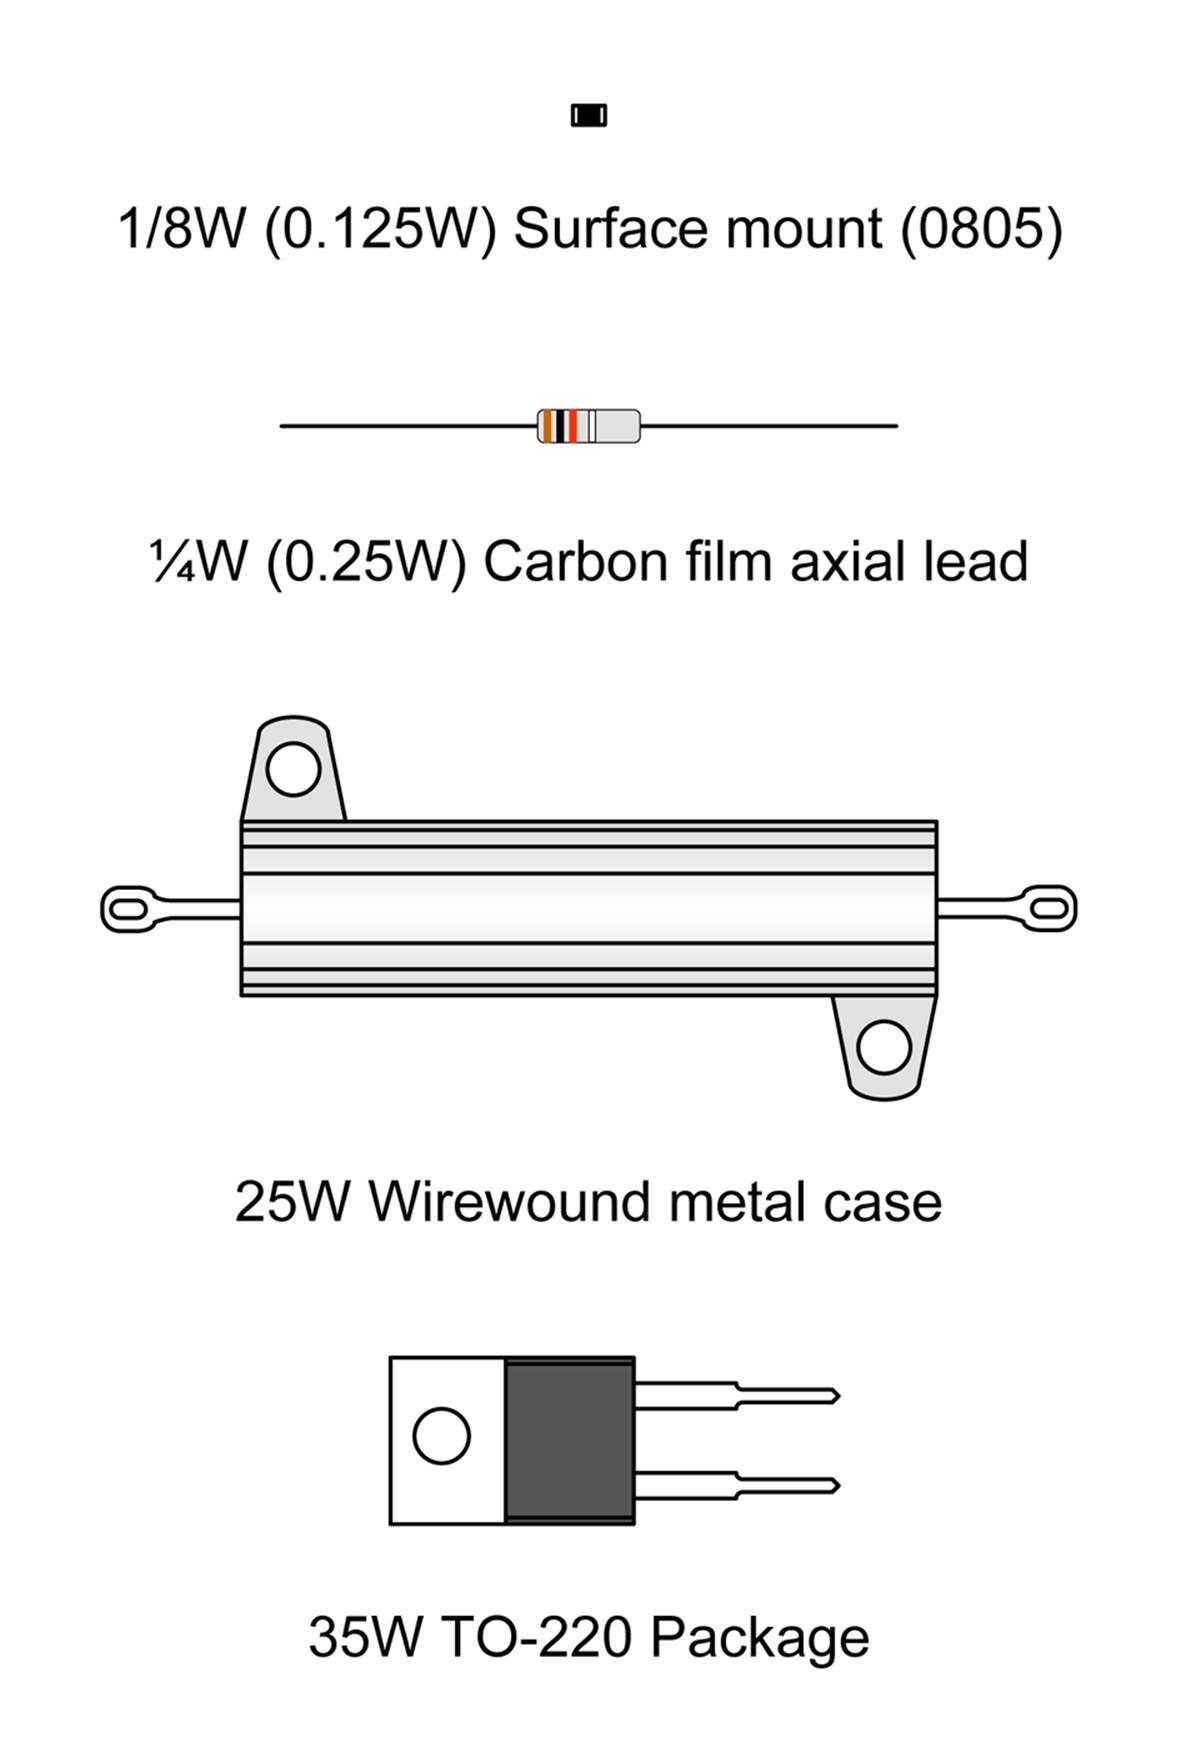 Resistor package styles